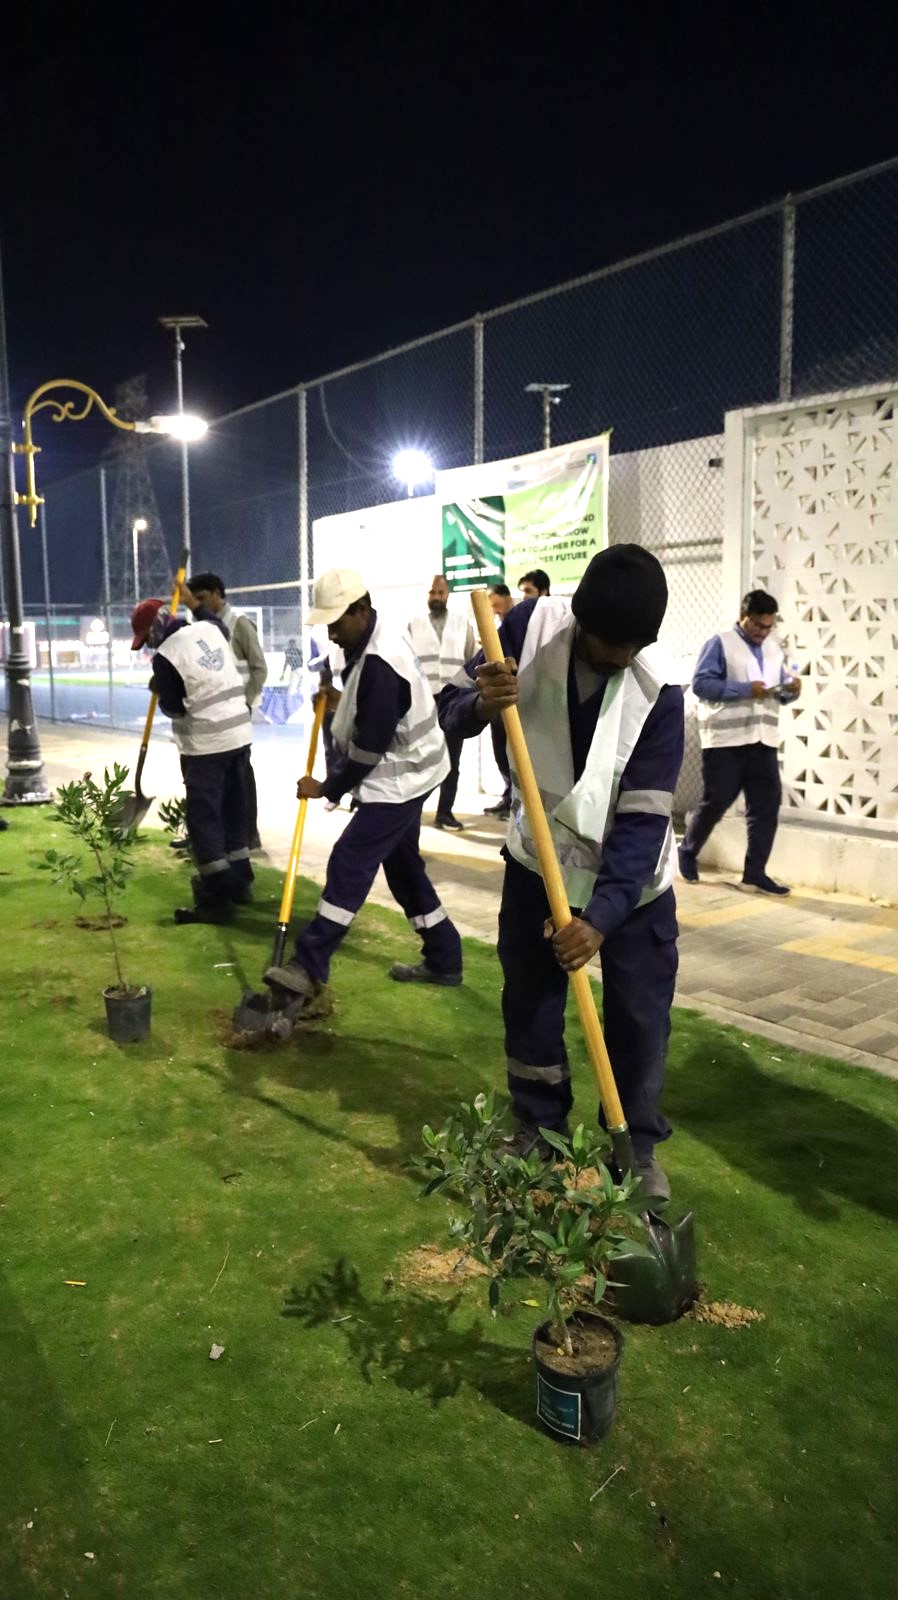 بلدية بقيق تزرع 200 شتلة من أشجار الكرفس في منتزه الروضة تزامنا مع مبادرة السعودية الخضراء*